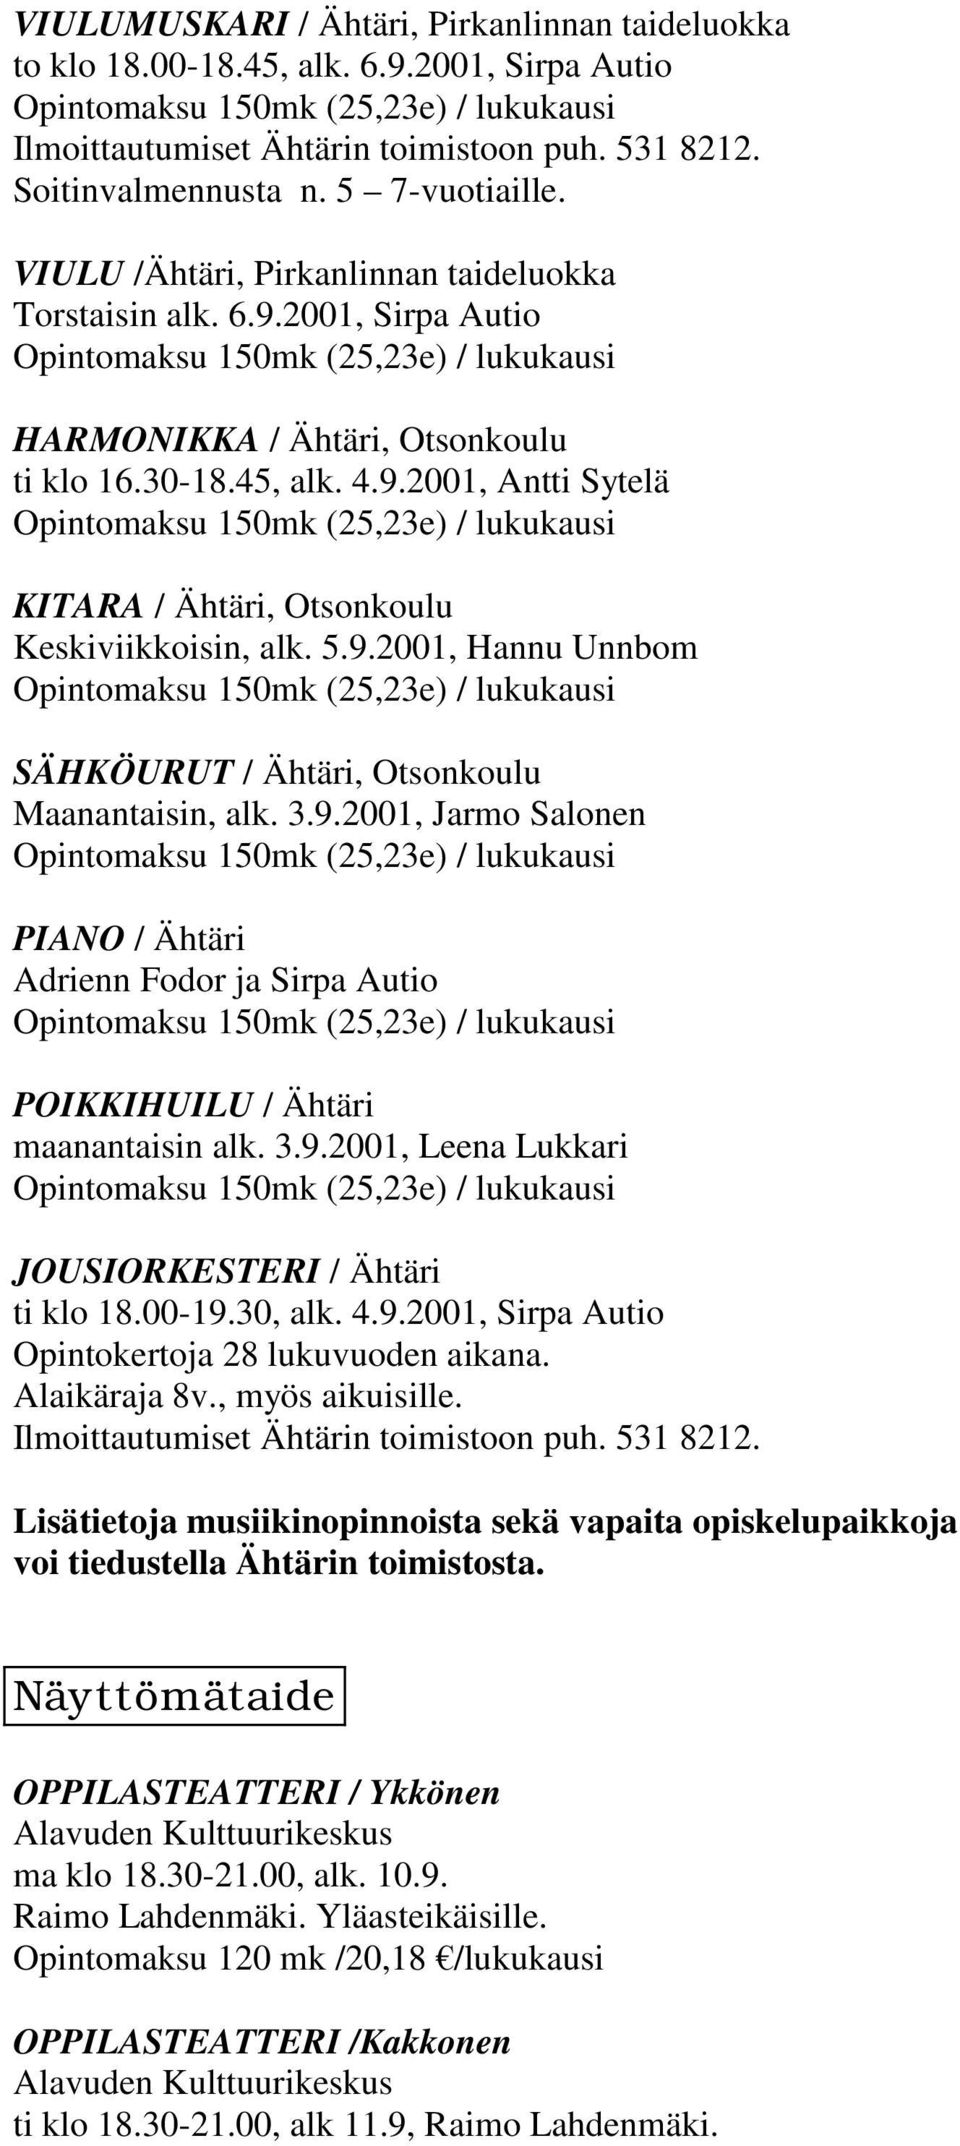 5.9.2001, Hannu Unnbom SÄHKÖURUT / Ähtäri, Otsonkoulu Maanantaisin, alk. 3.9.2001, Jarmo Salonen PIANO / Ähtäri Adrienn Fodor ja Sirpa Autio POIKKIHUILU / Ähtäri maanantaisin alk. 3.9.2001, Leena Lukkari JOUSIORKESTERI / Ähtäri ti klo 18.